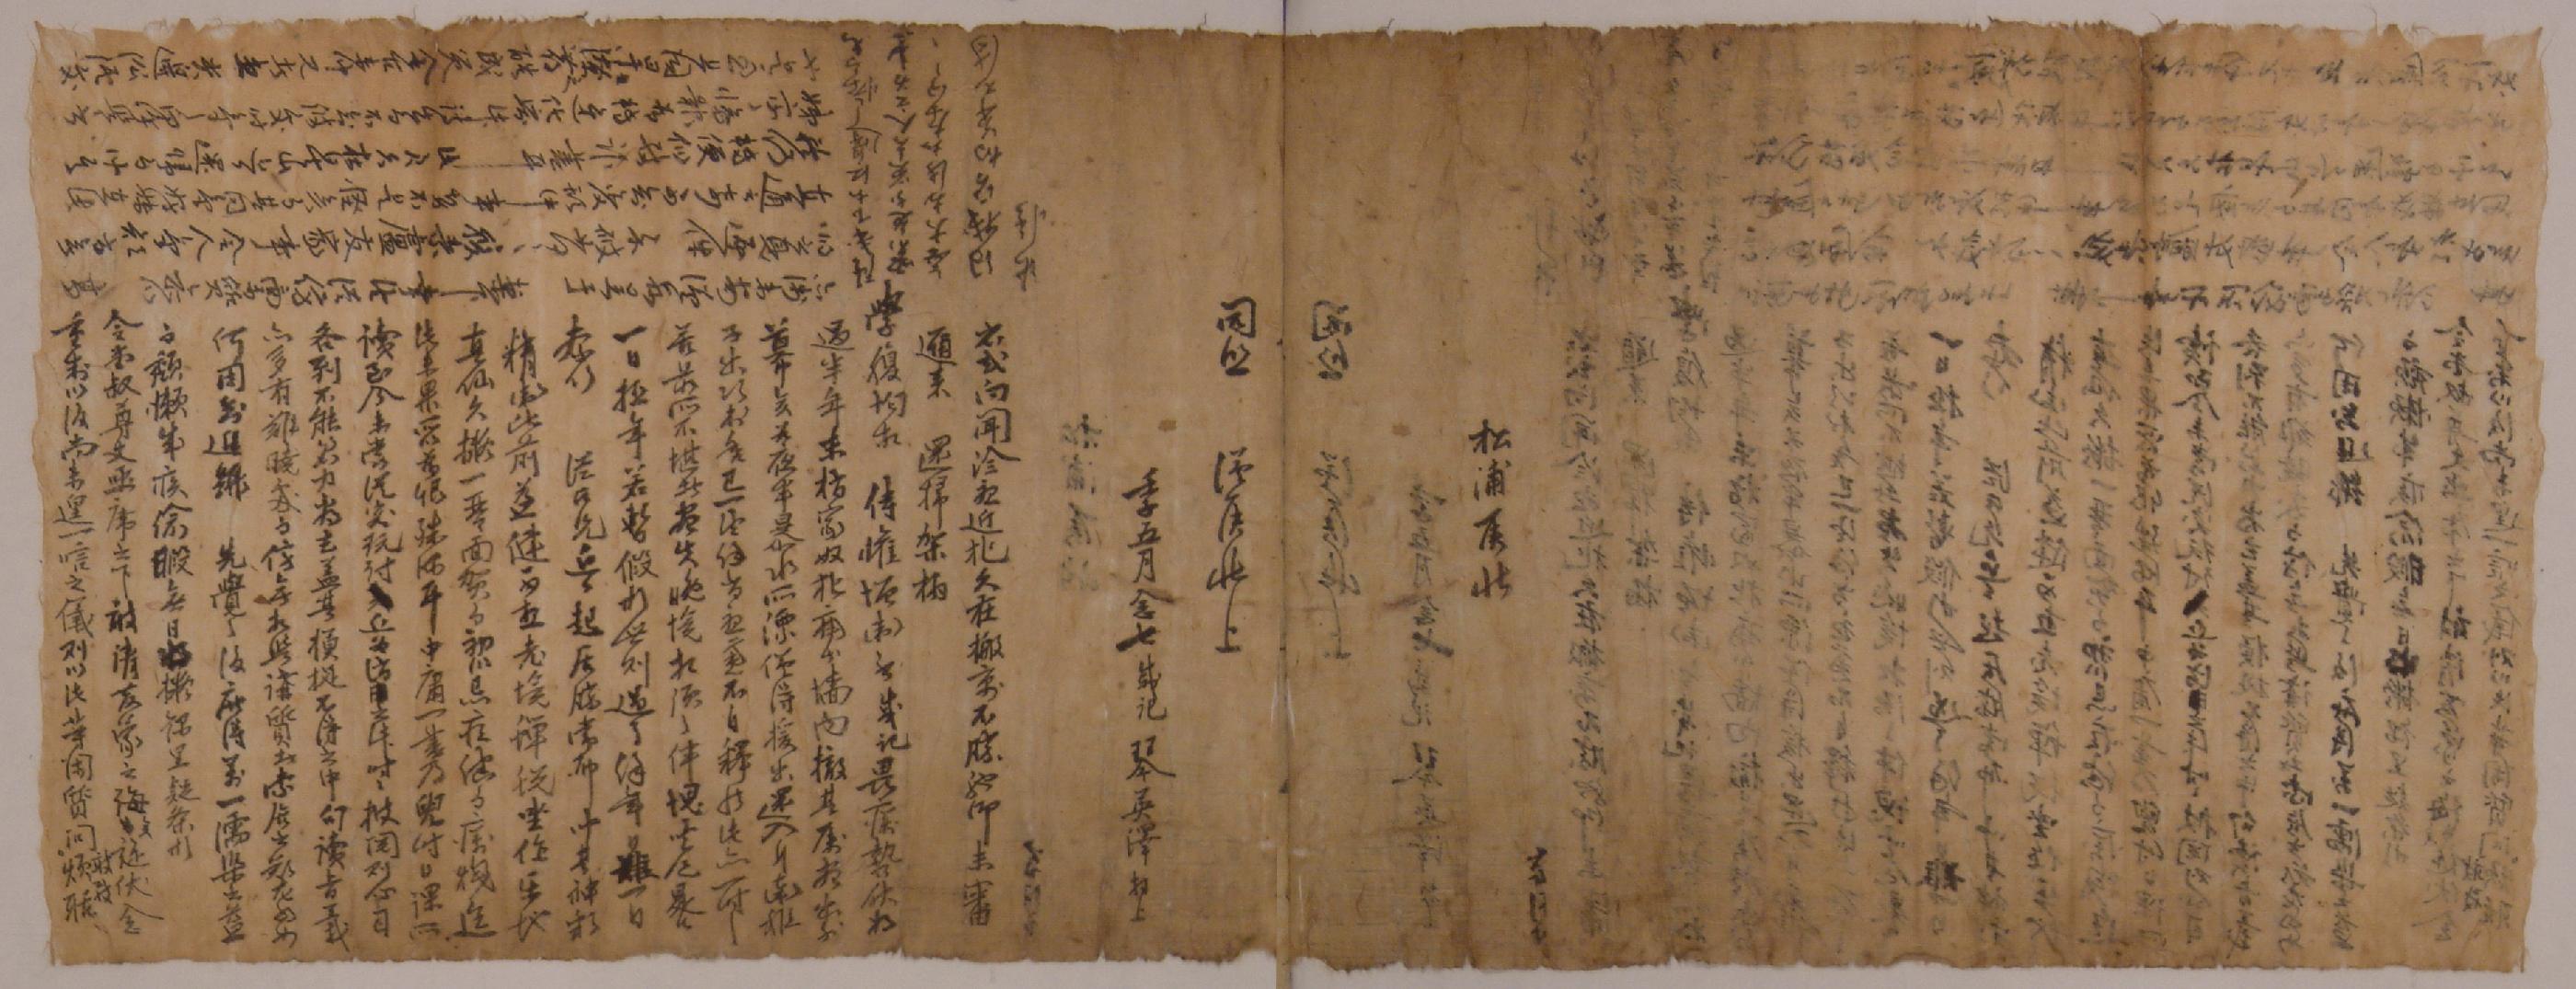 금영택이 임오년에 송포(松浦)에게 안부를 묻는 편지